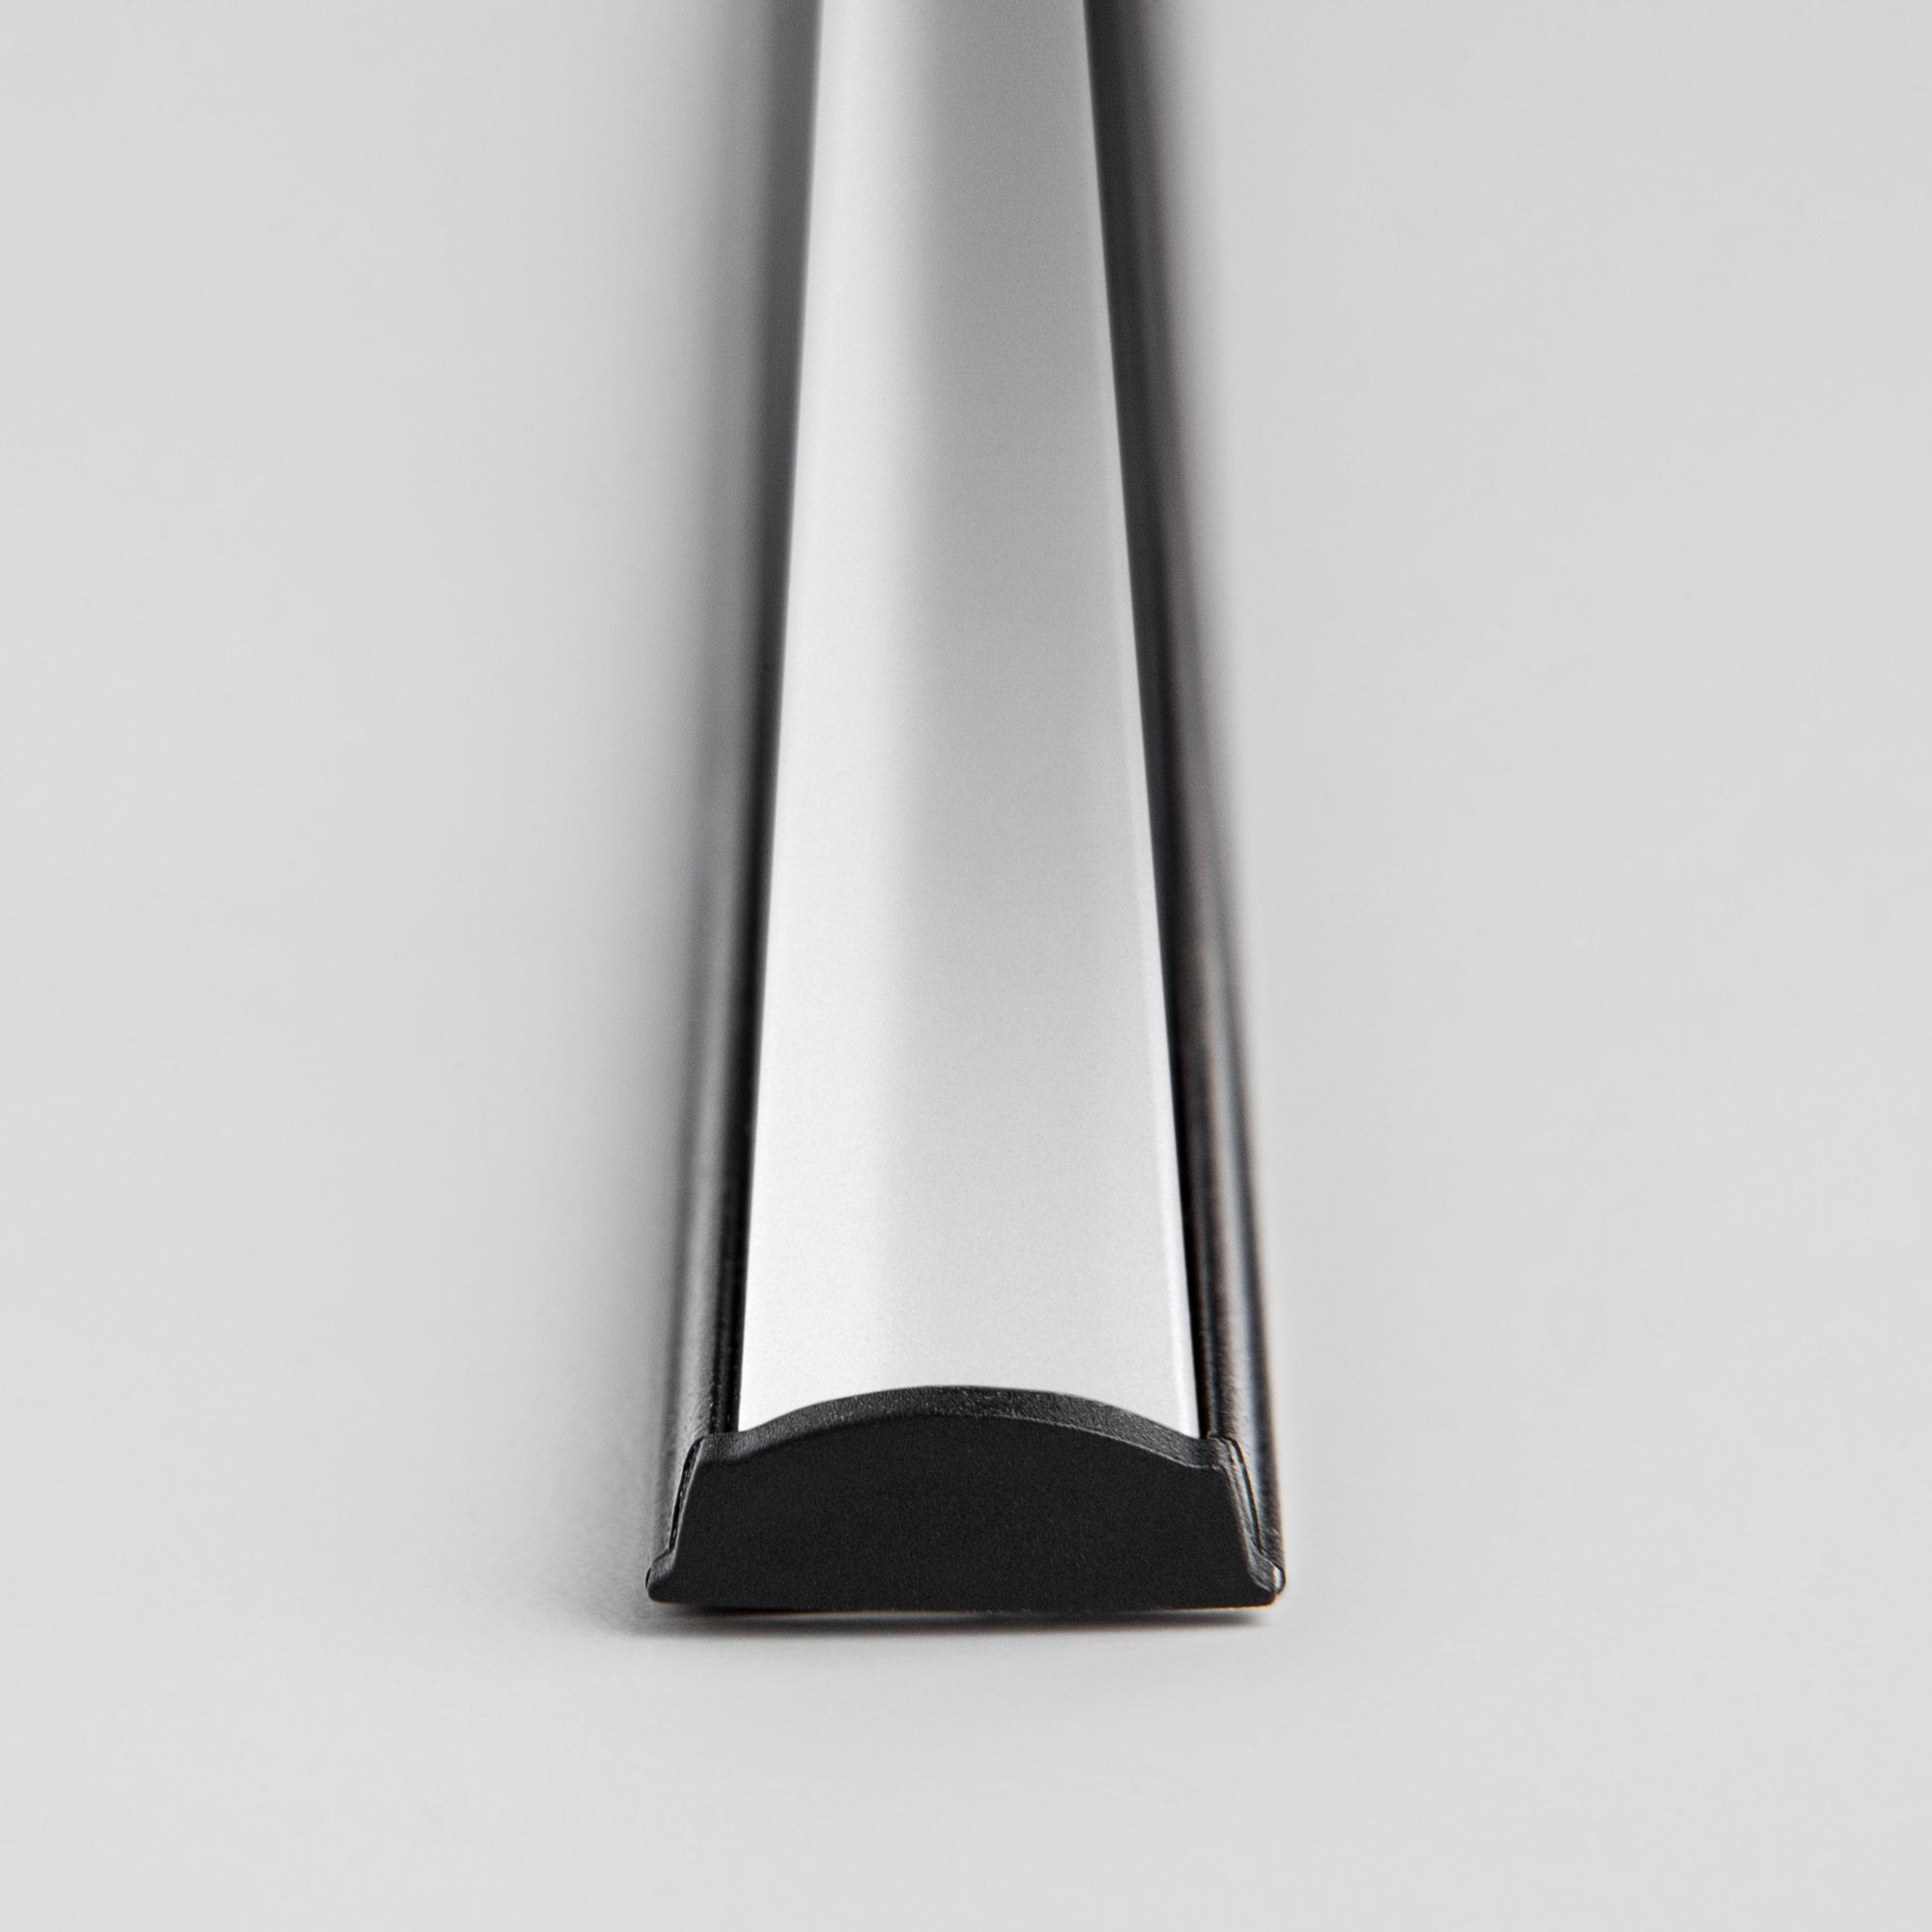 Гибкий алюминиевый профиль черный/белый для светодиодной ленты LL-2-ALP012